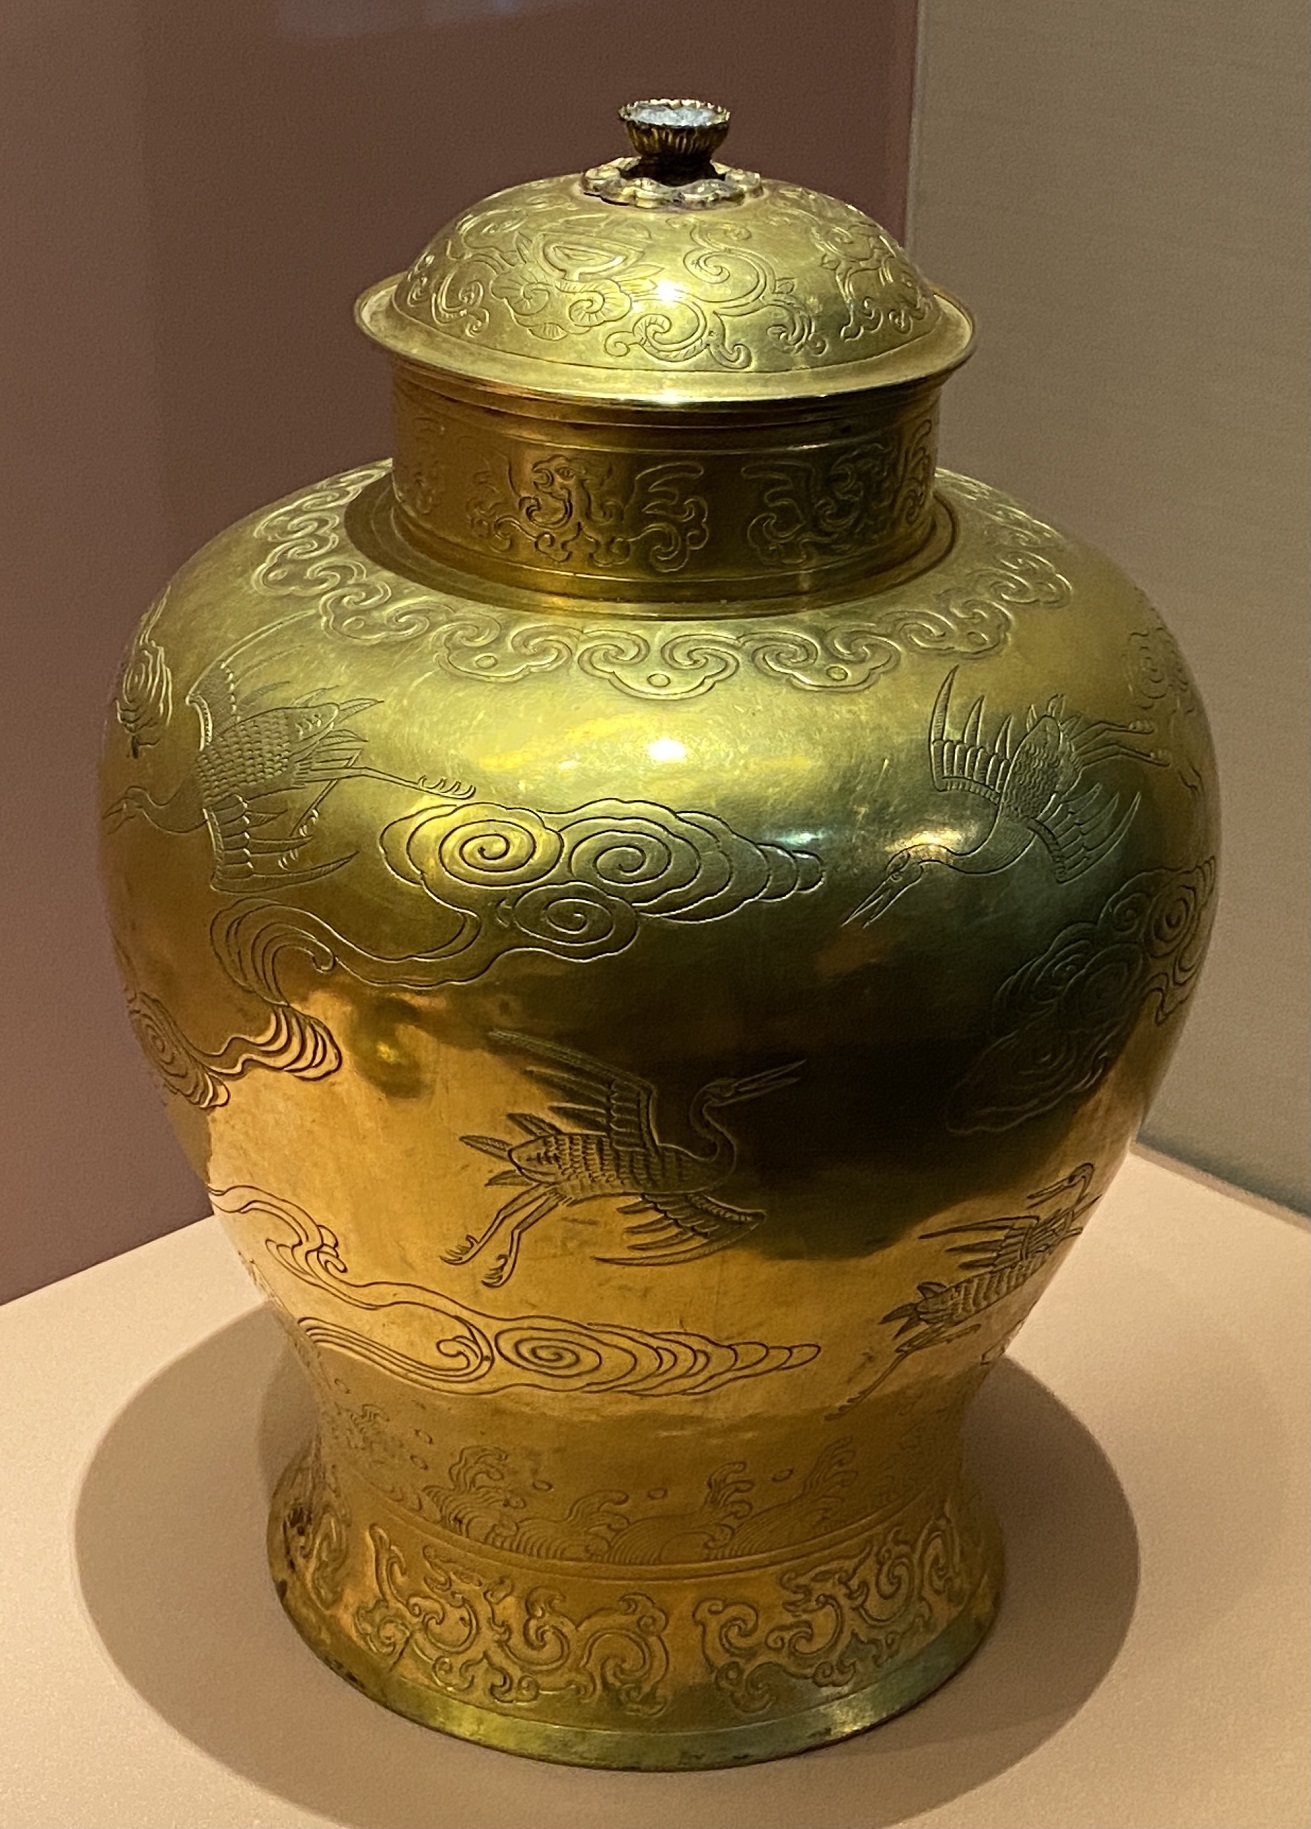 金瓶-明時代-特別展【食味人間】四川博物院・中国国家博物館